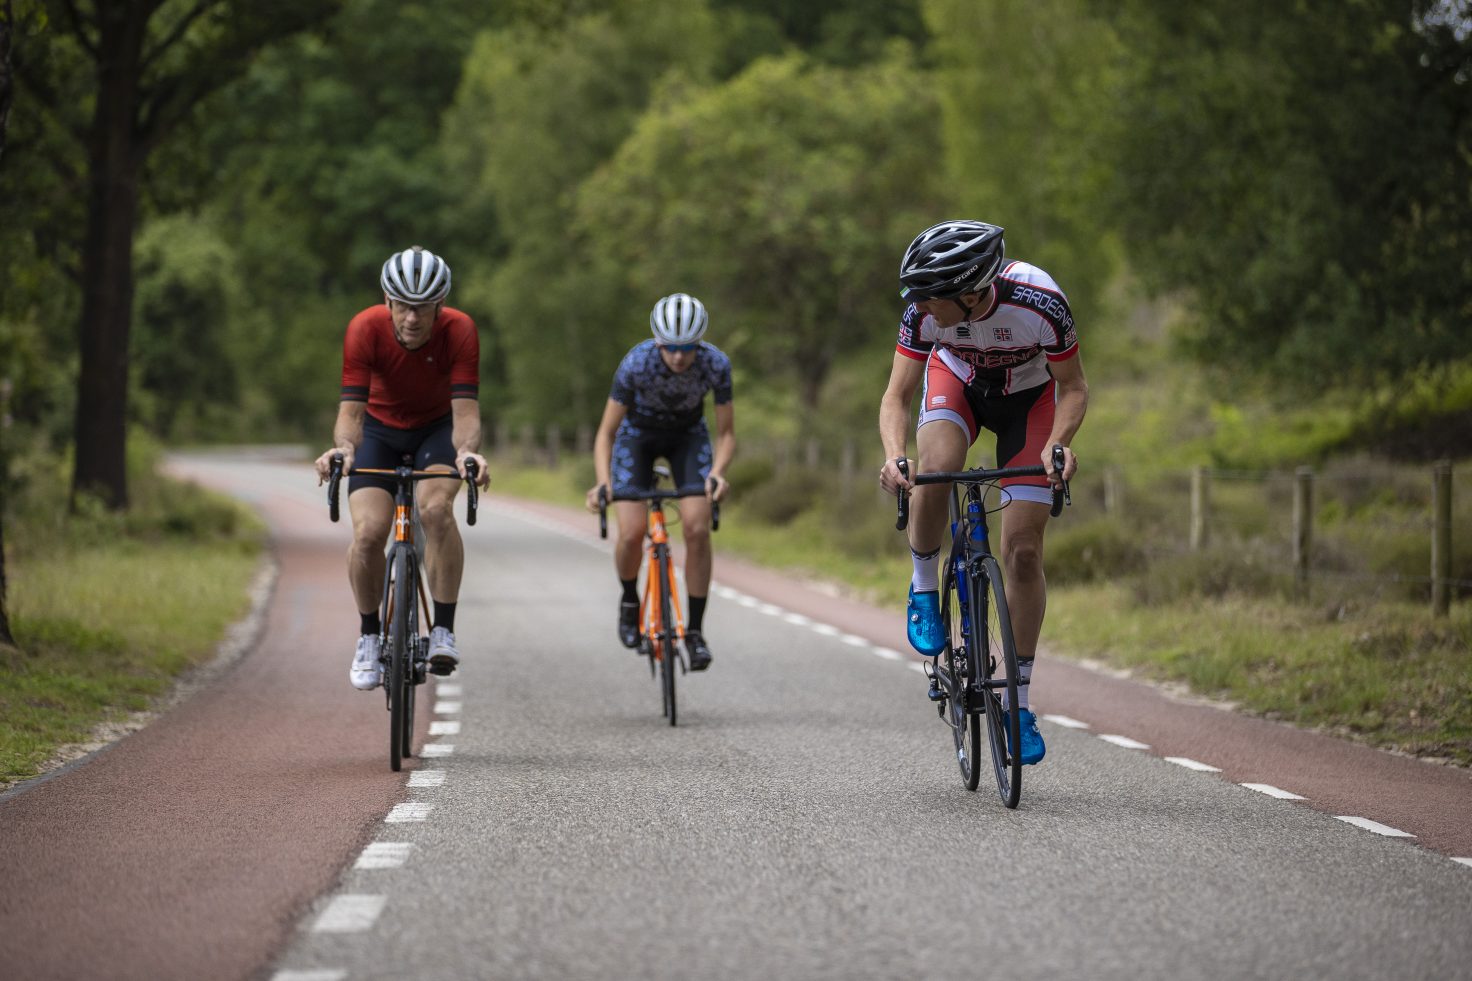 Beginnen met wielrennen? Dit heb allemaal nodig | Fiets.nl Race website